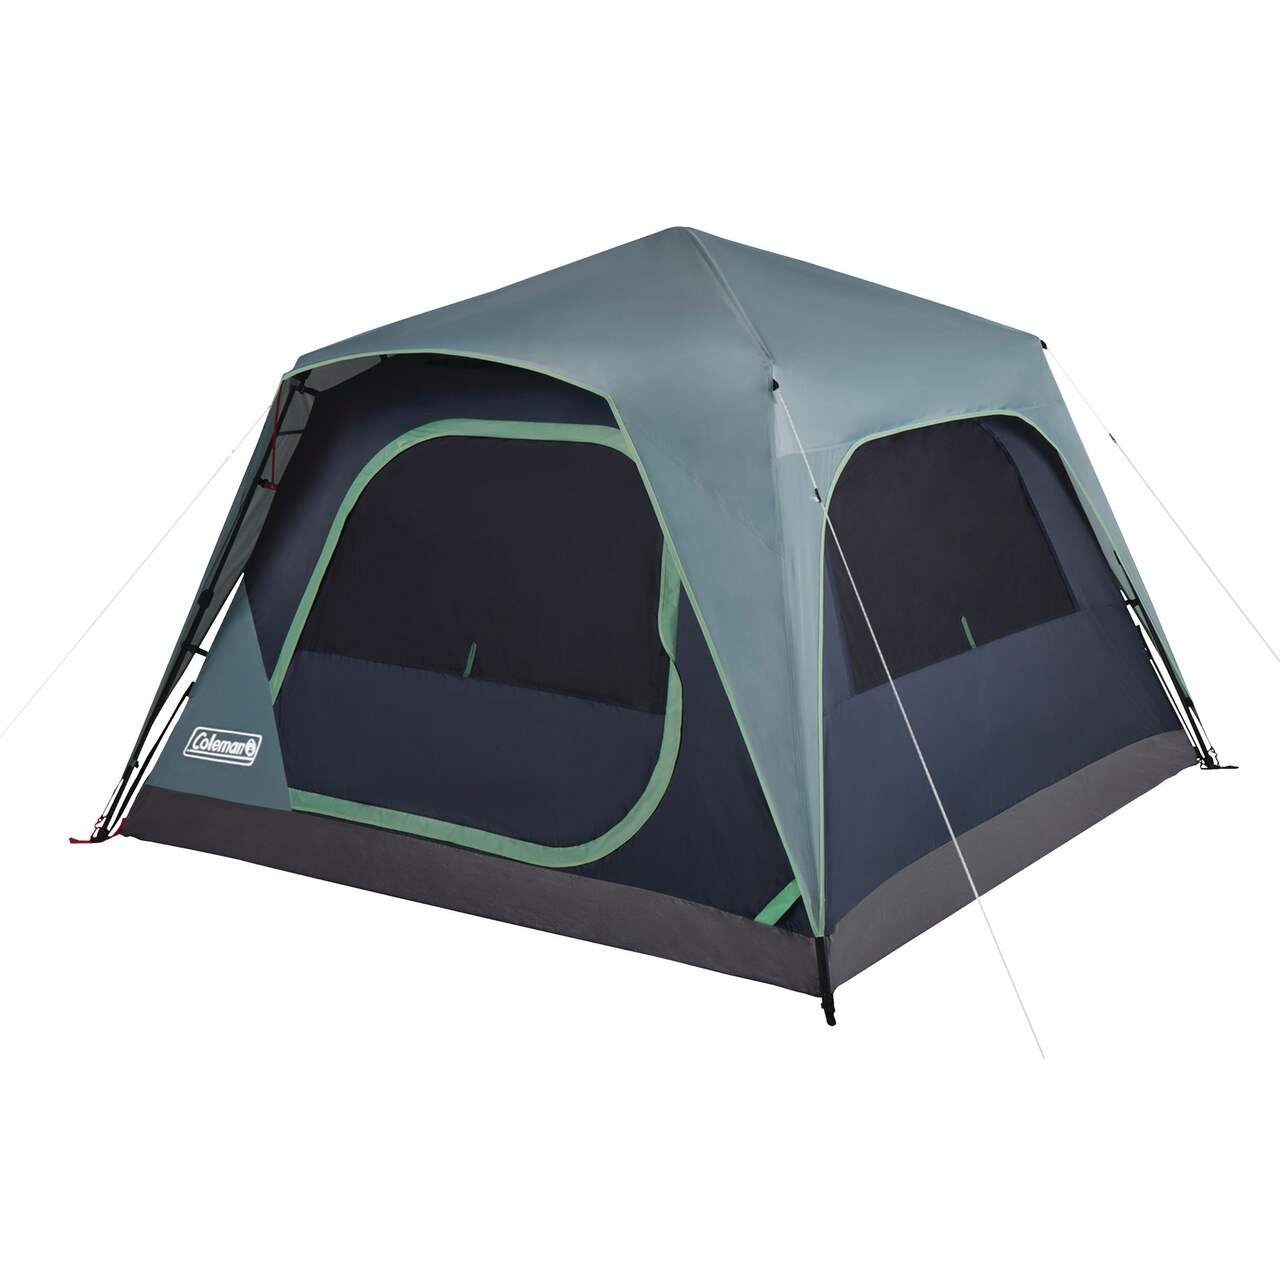 Plus d'emprunts : location de tente & matériel de camping